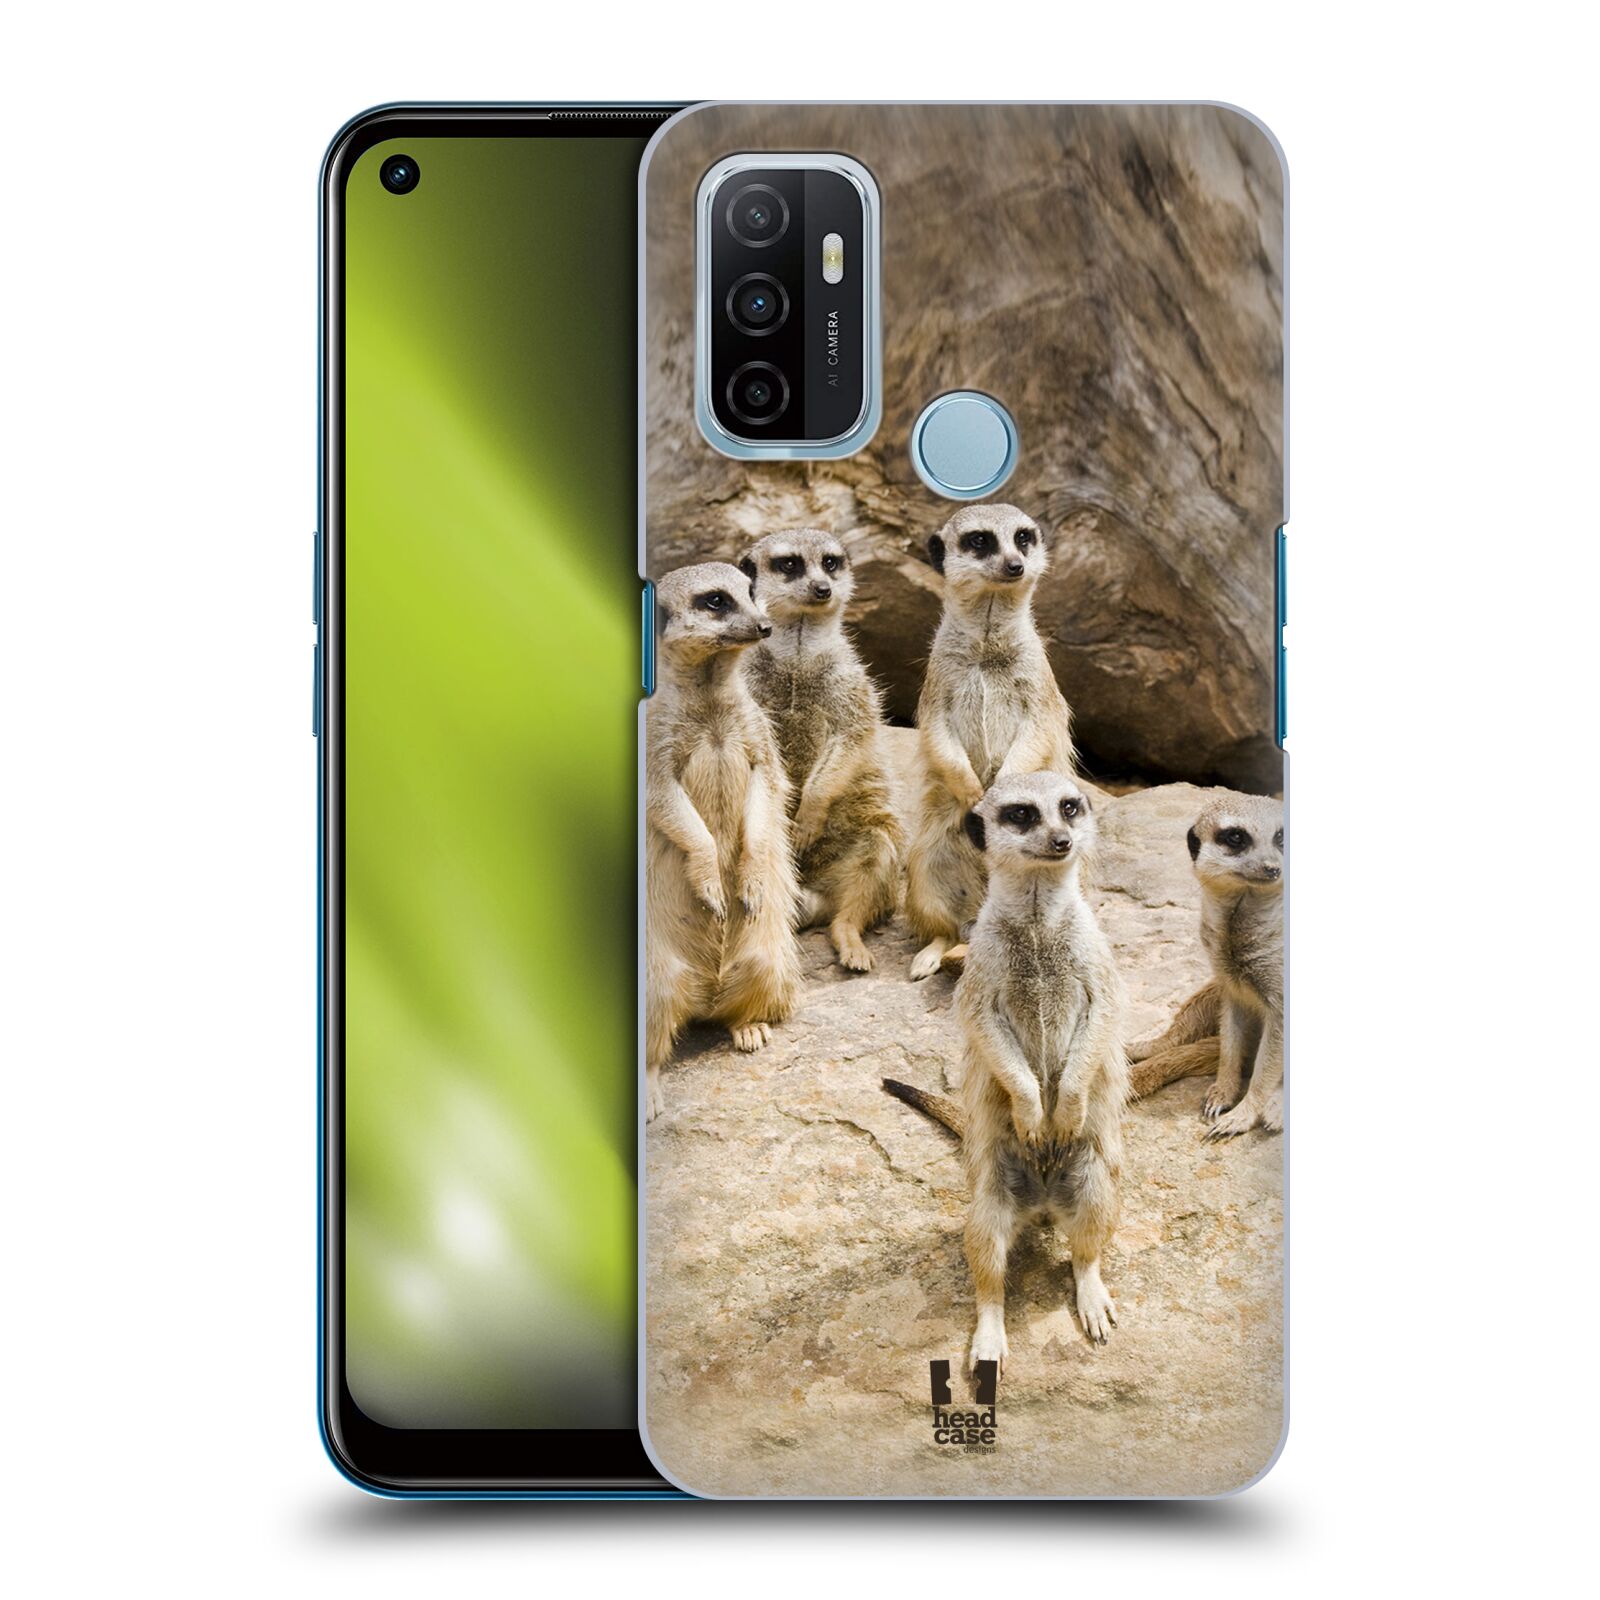 Zadní obal pro mobil Oppo A53 / A53s - HEAD CASE - Svět zvířat roztomilé surikaty